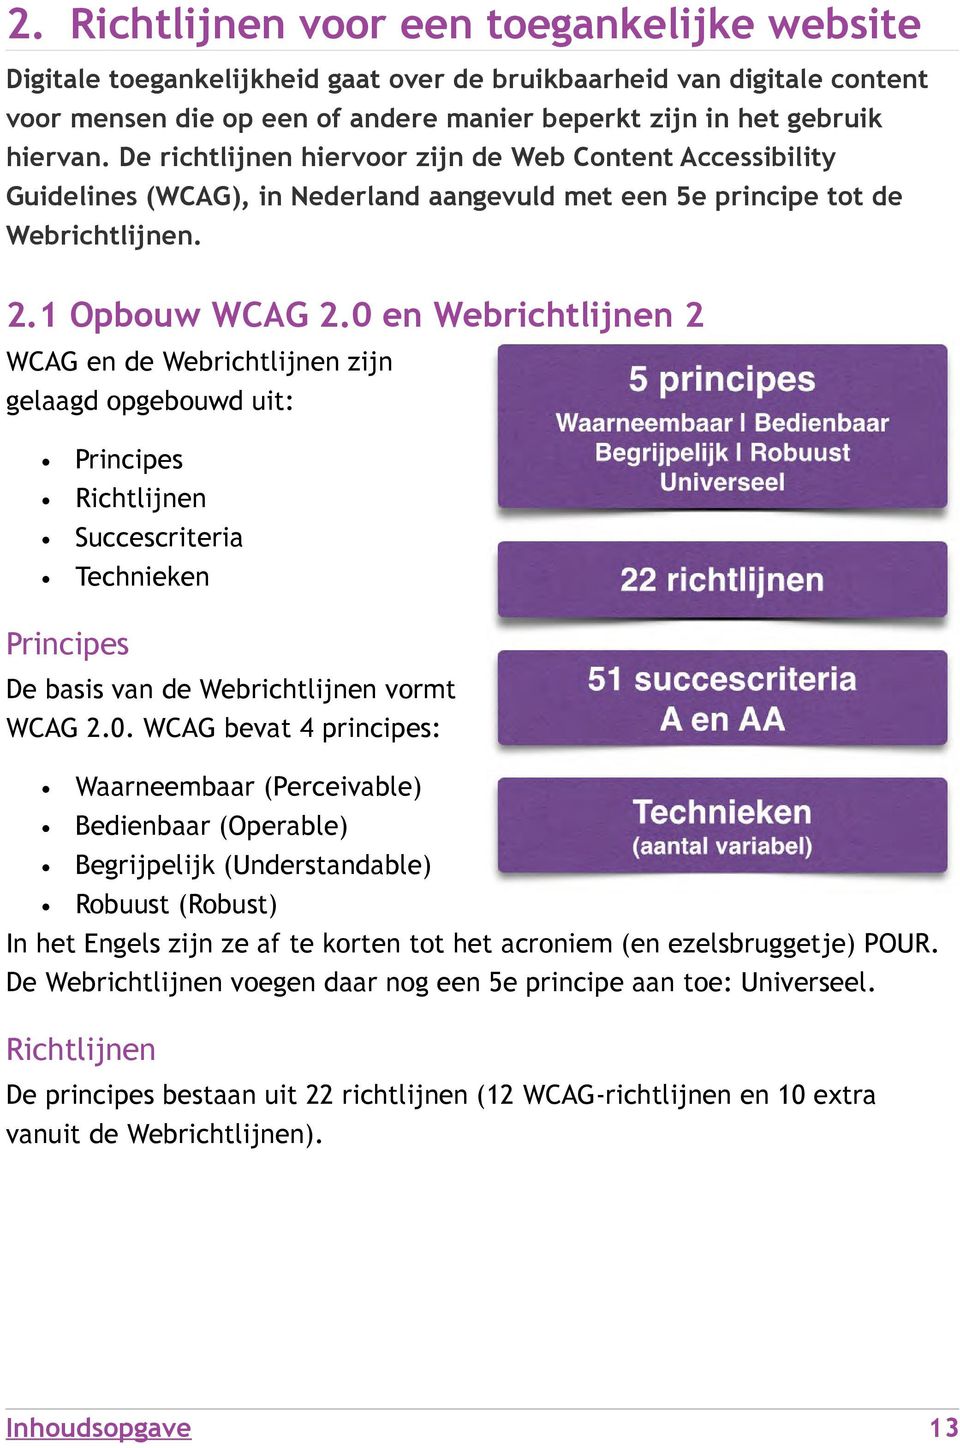 0 en Webrichtlijnen 2 WCAG en de Webrichtlijnen zijn gelaagd opgebouwd uit: Principes Richtlijnen Succescriteria Technieken Principes De basis van de Webrichtlijnen vormt WCAG 2.0. WCAG bevat 4 principes: Waarneembaar (Perceivable) Bedienbaar (Operable) Begrijpelijk (Understandable) Robuust (Robust) In het Engels zijn ze af te korten tot het acroniem (en ezelsbruggetje) POUR.